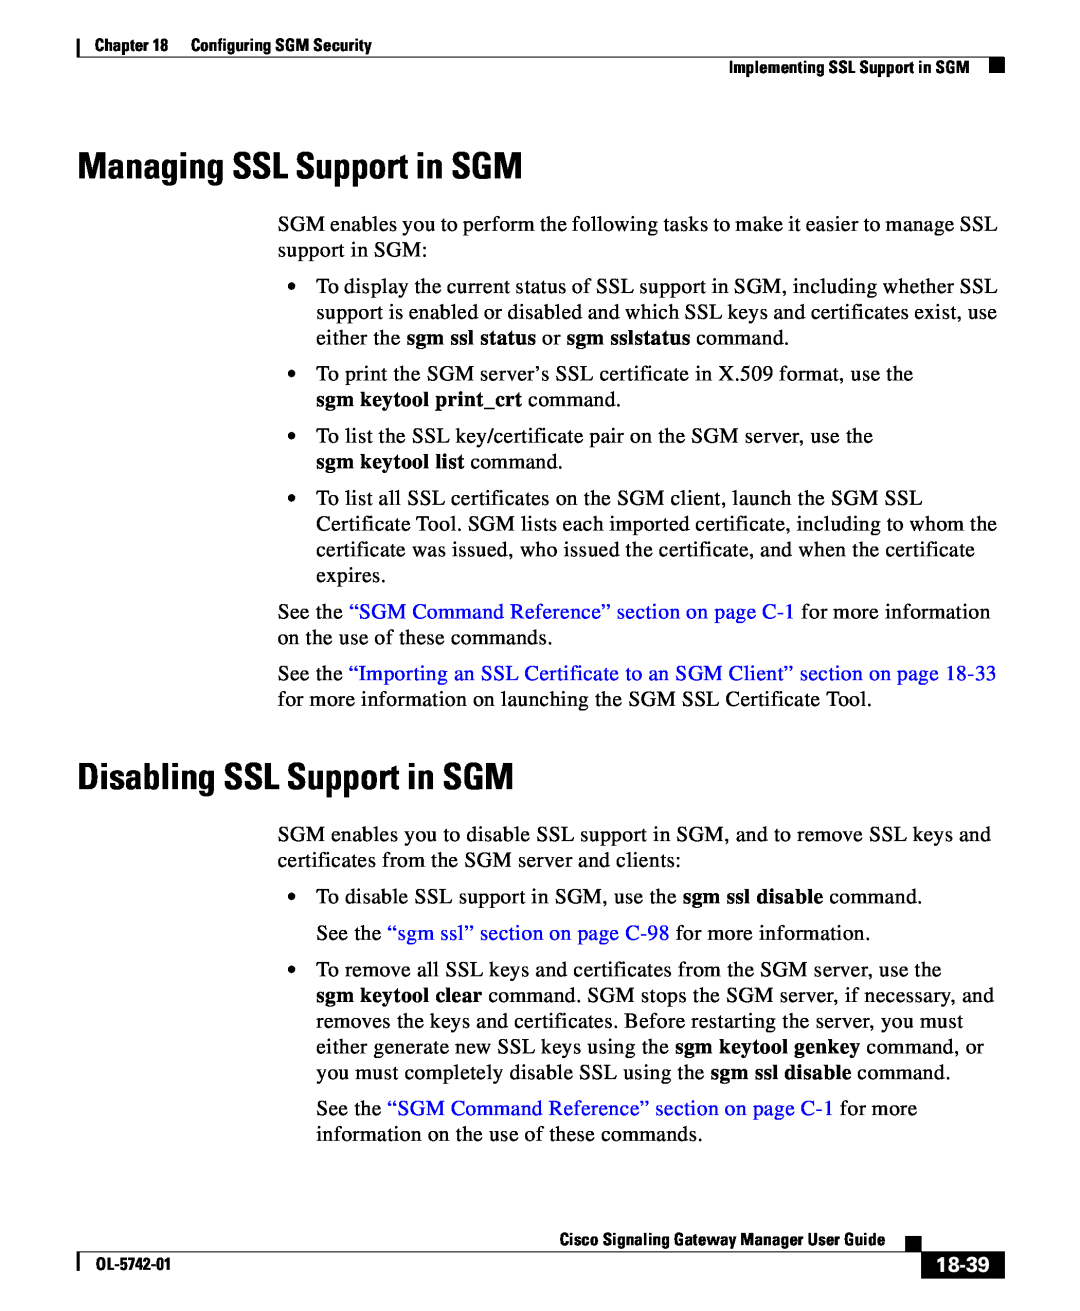 Cisco Systems OL-5742-01 manual Managing SSL Support in SGM, Disabling SSL Support in SGM, 18-39 